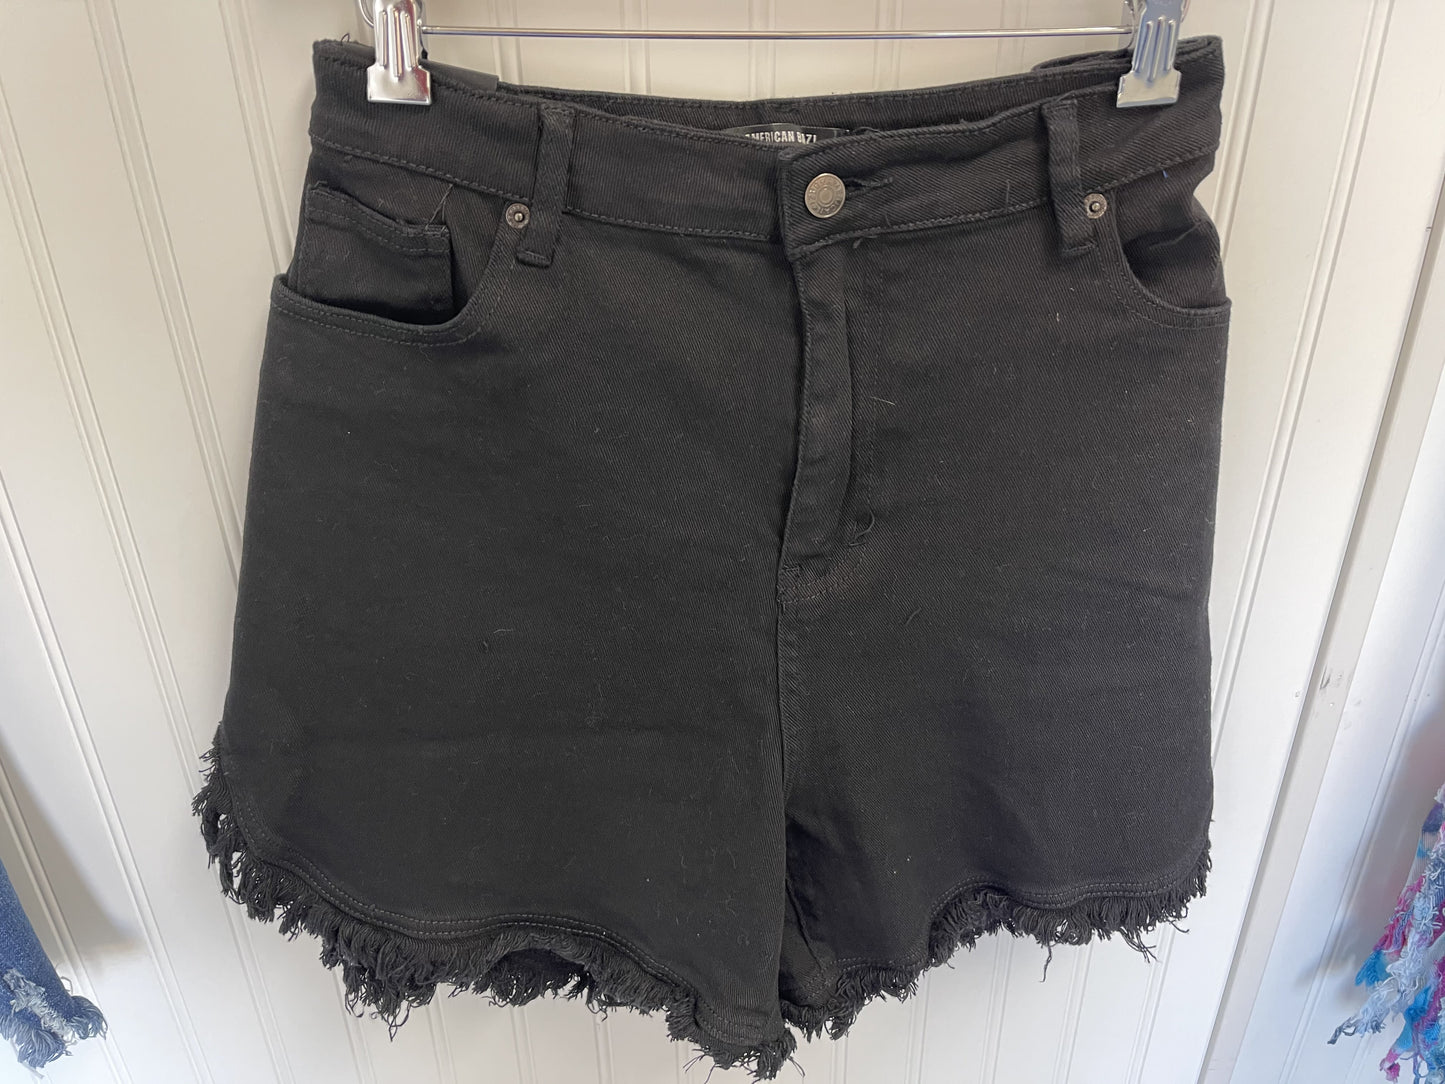 Black Denim shorts with fringe